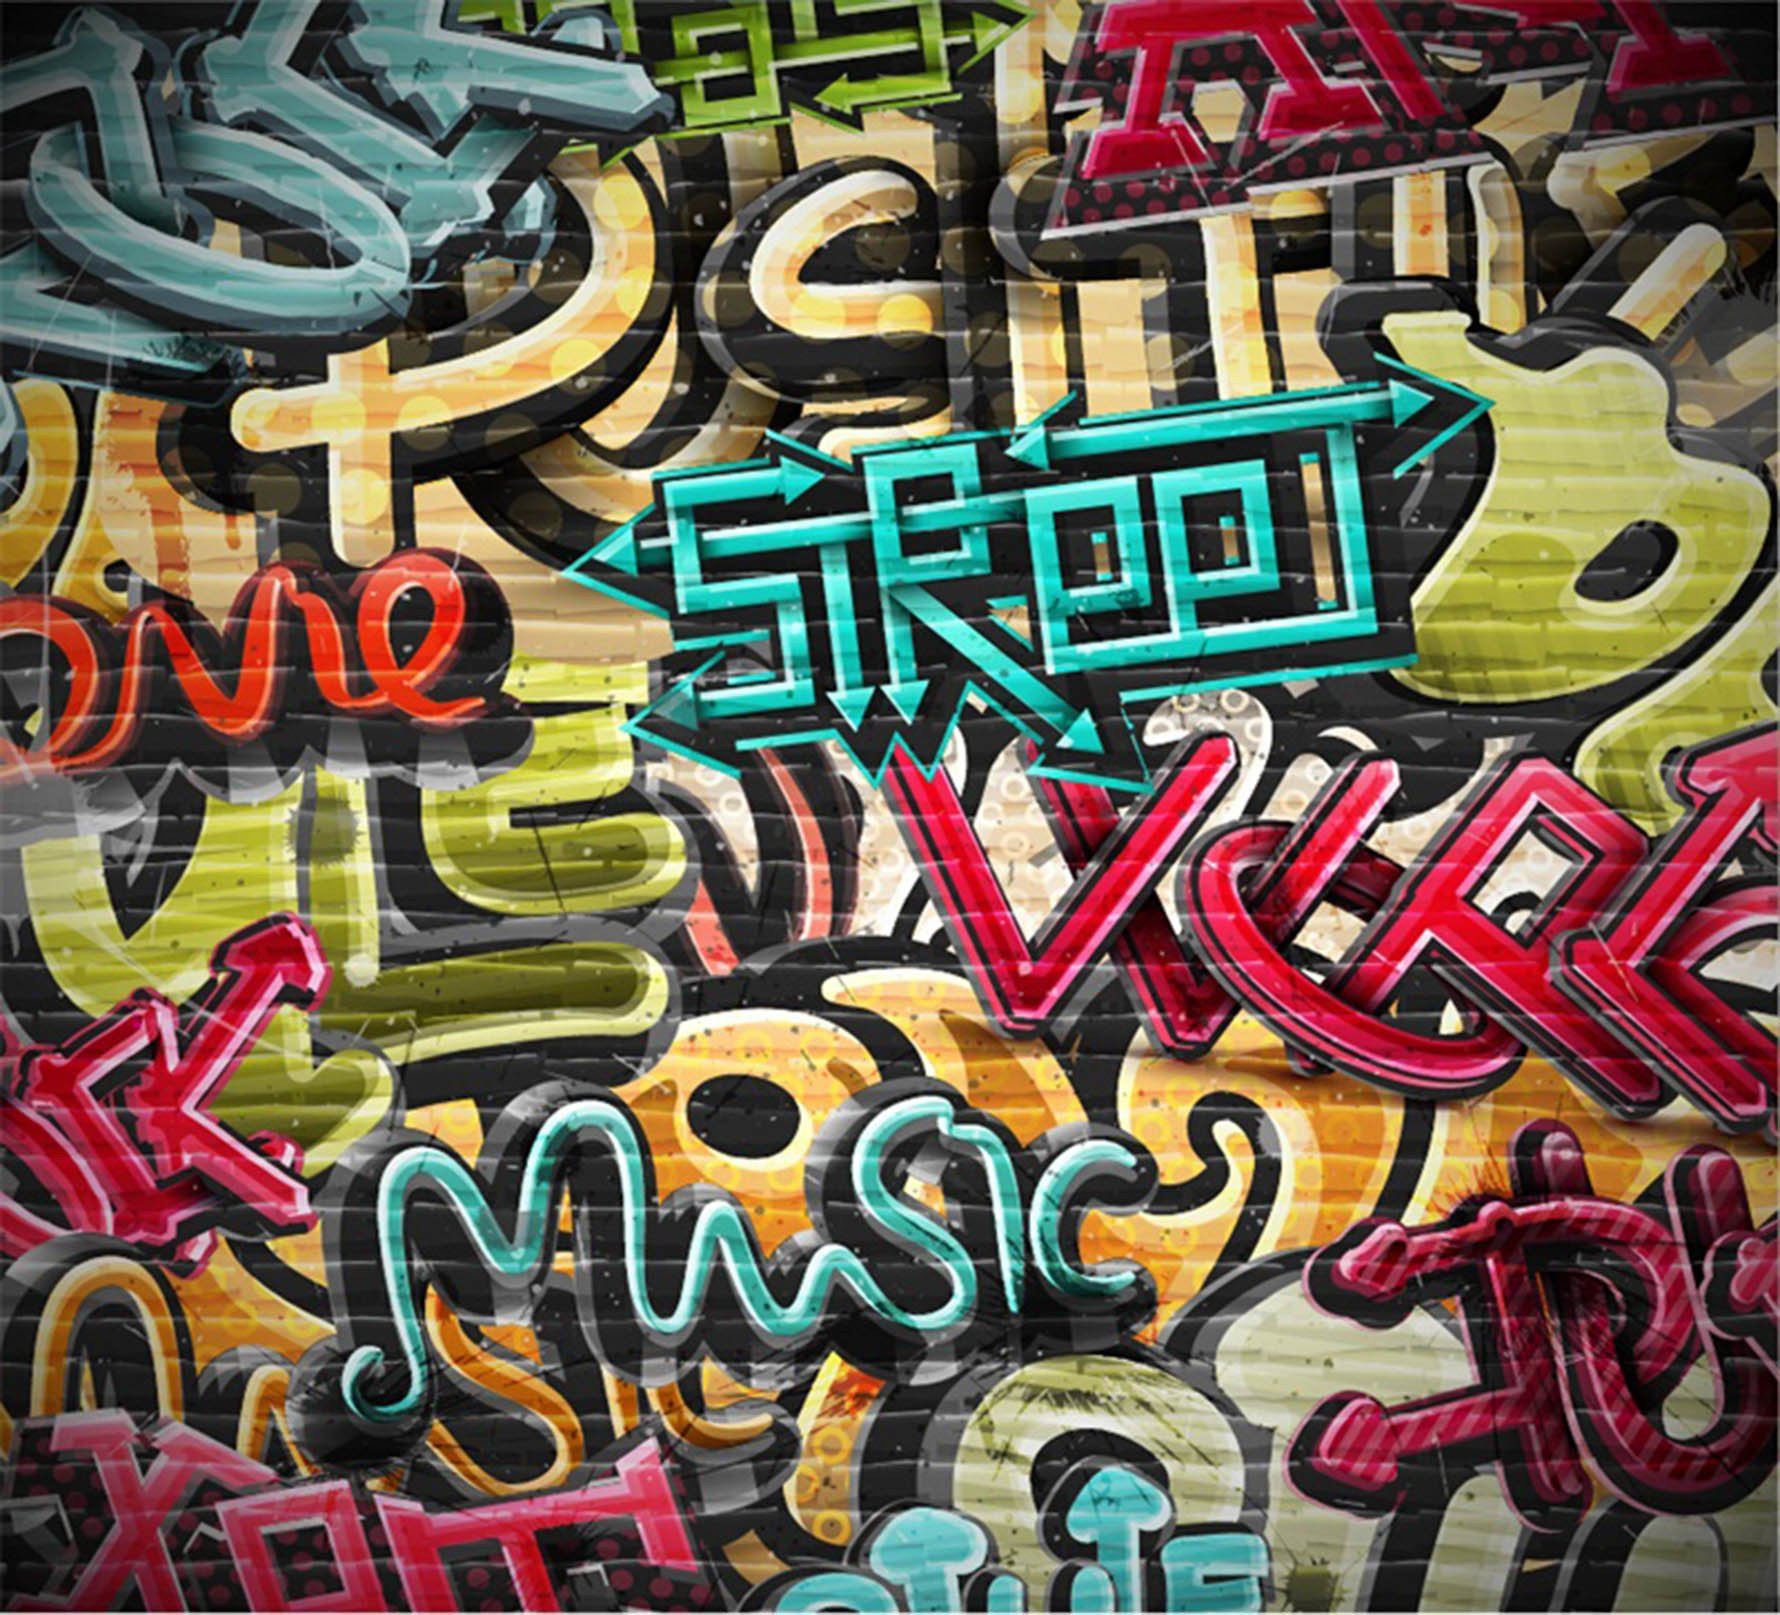 3D Graffiti Color Words 311 Garage Door Mural Wallpaper AJ Wallpaper 